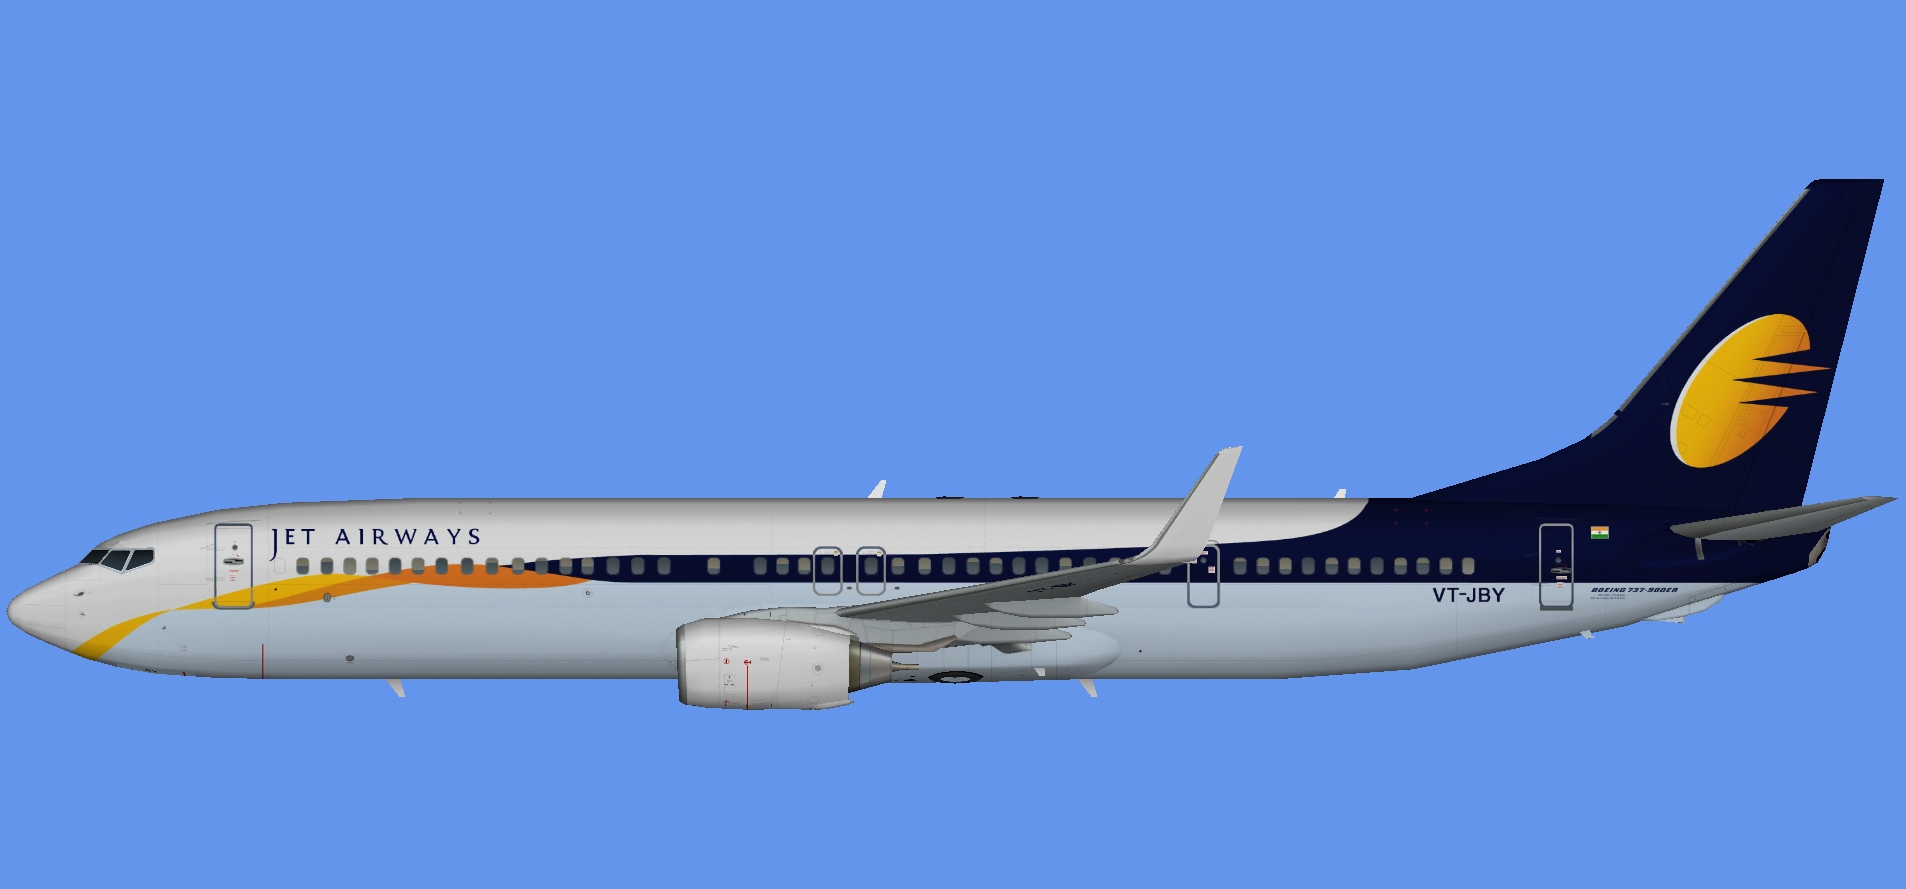 Jet Airways Boeing 737-900ER